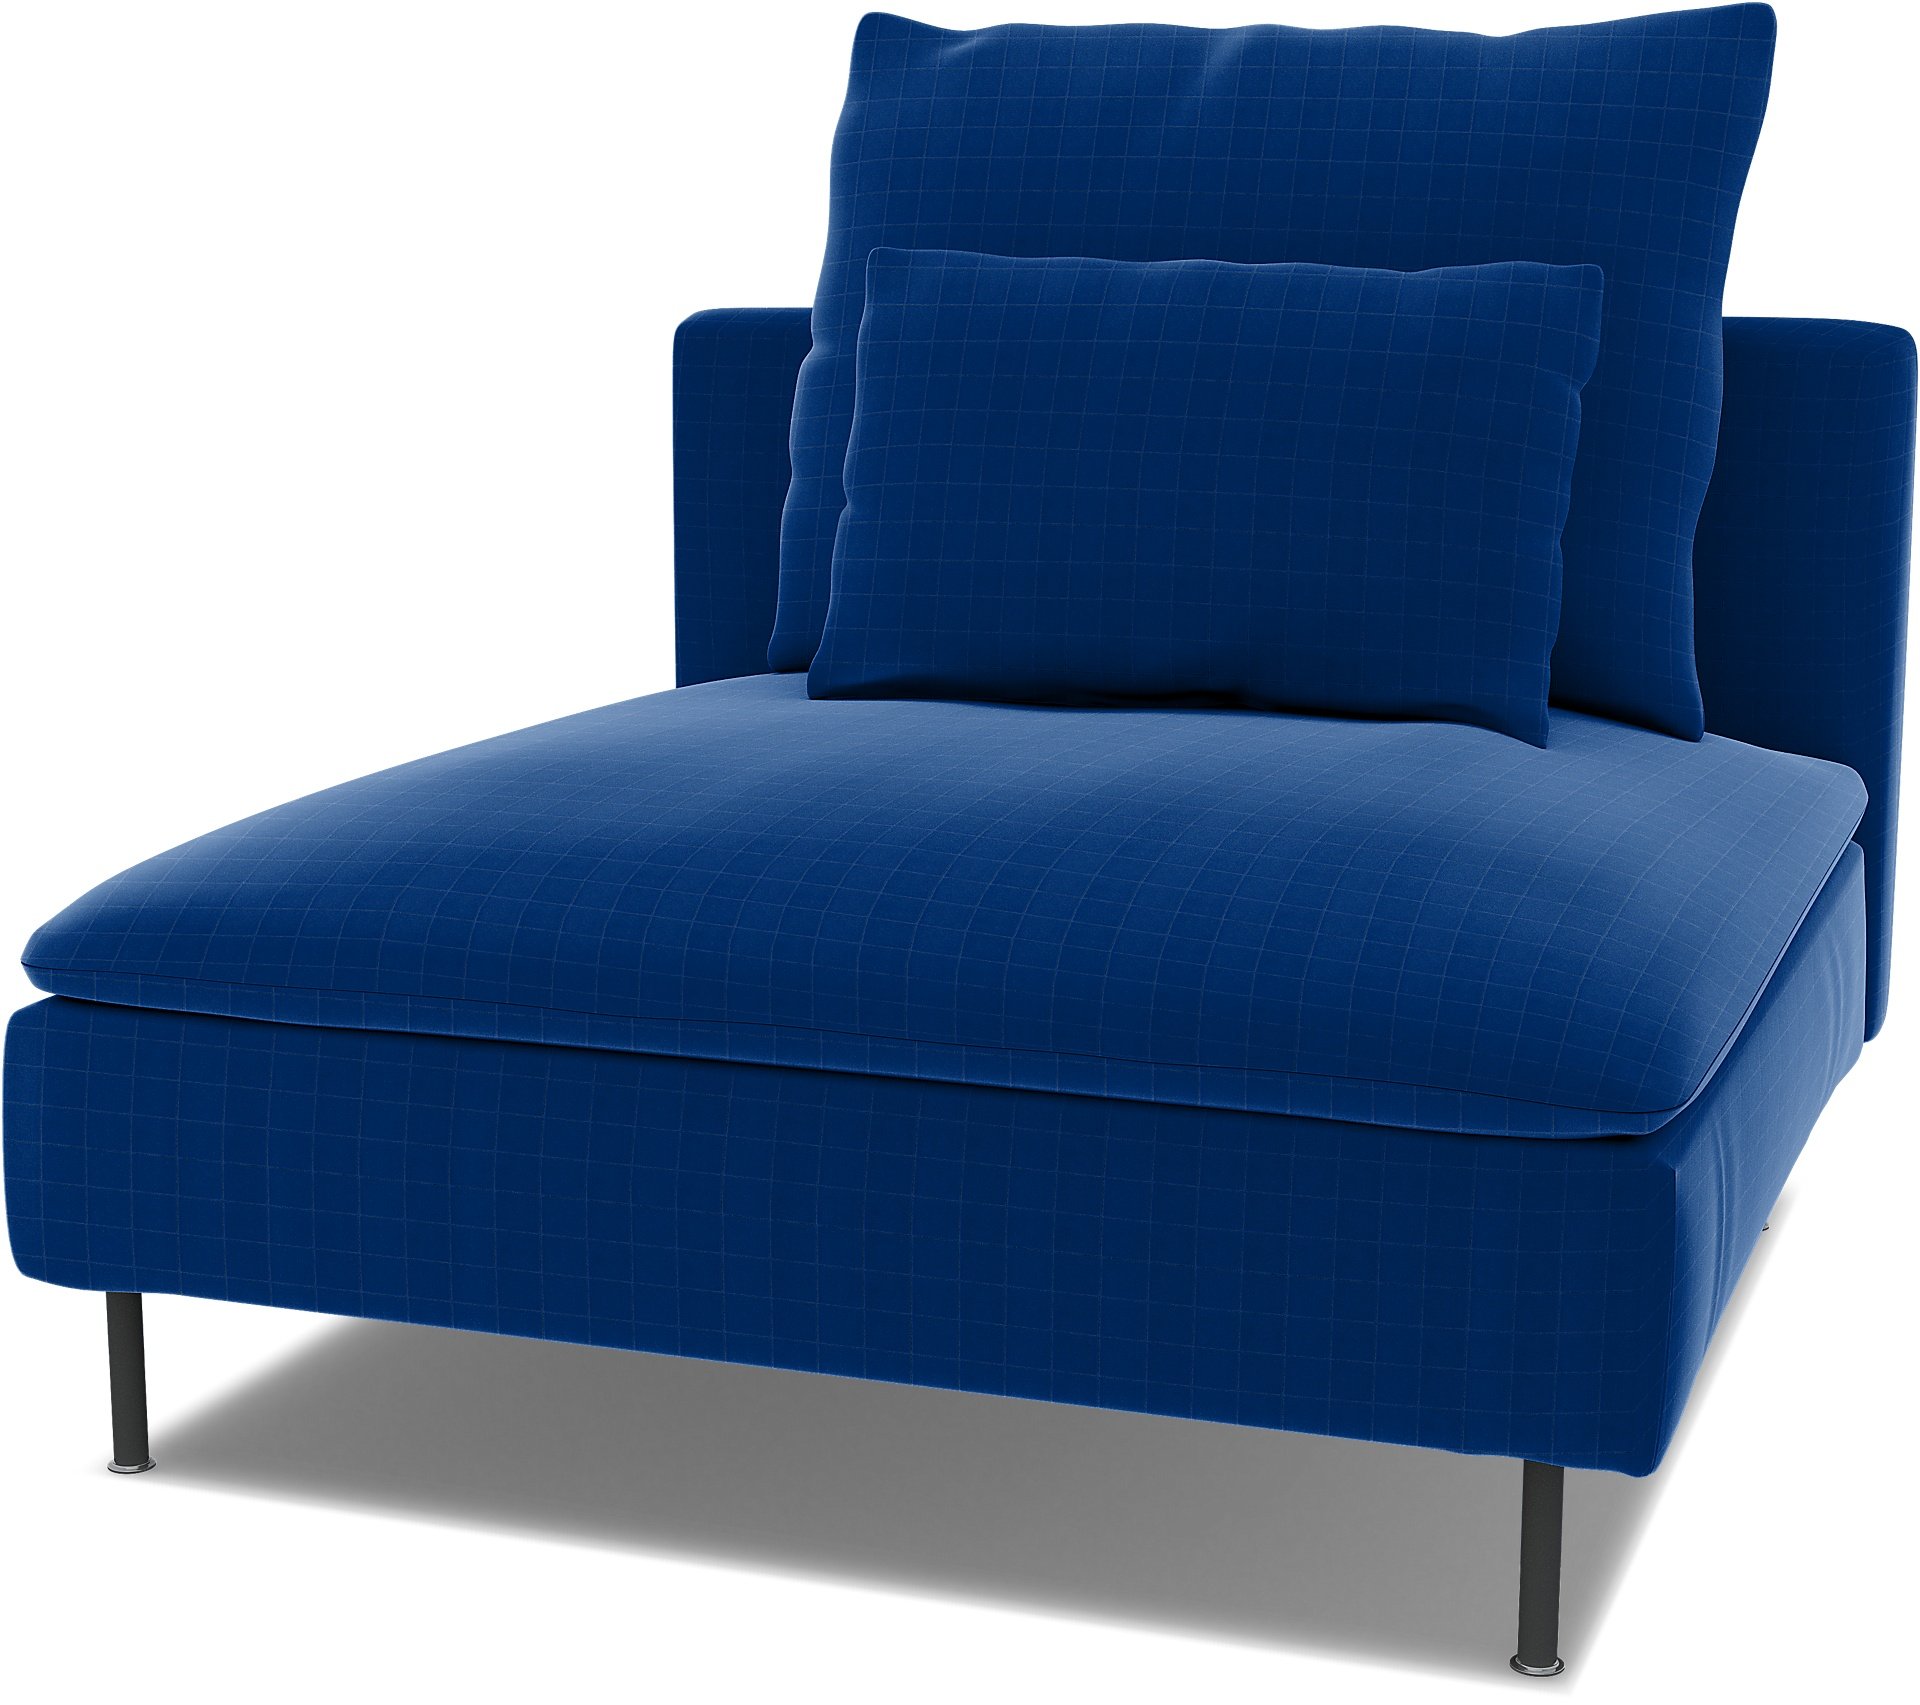 Spare seat cushion cover for SODERHAMN 1 SEAT SECTION , Lapis Blue, Velvet - Bemz